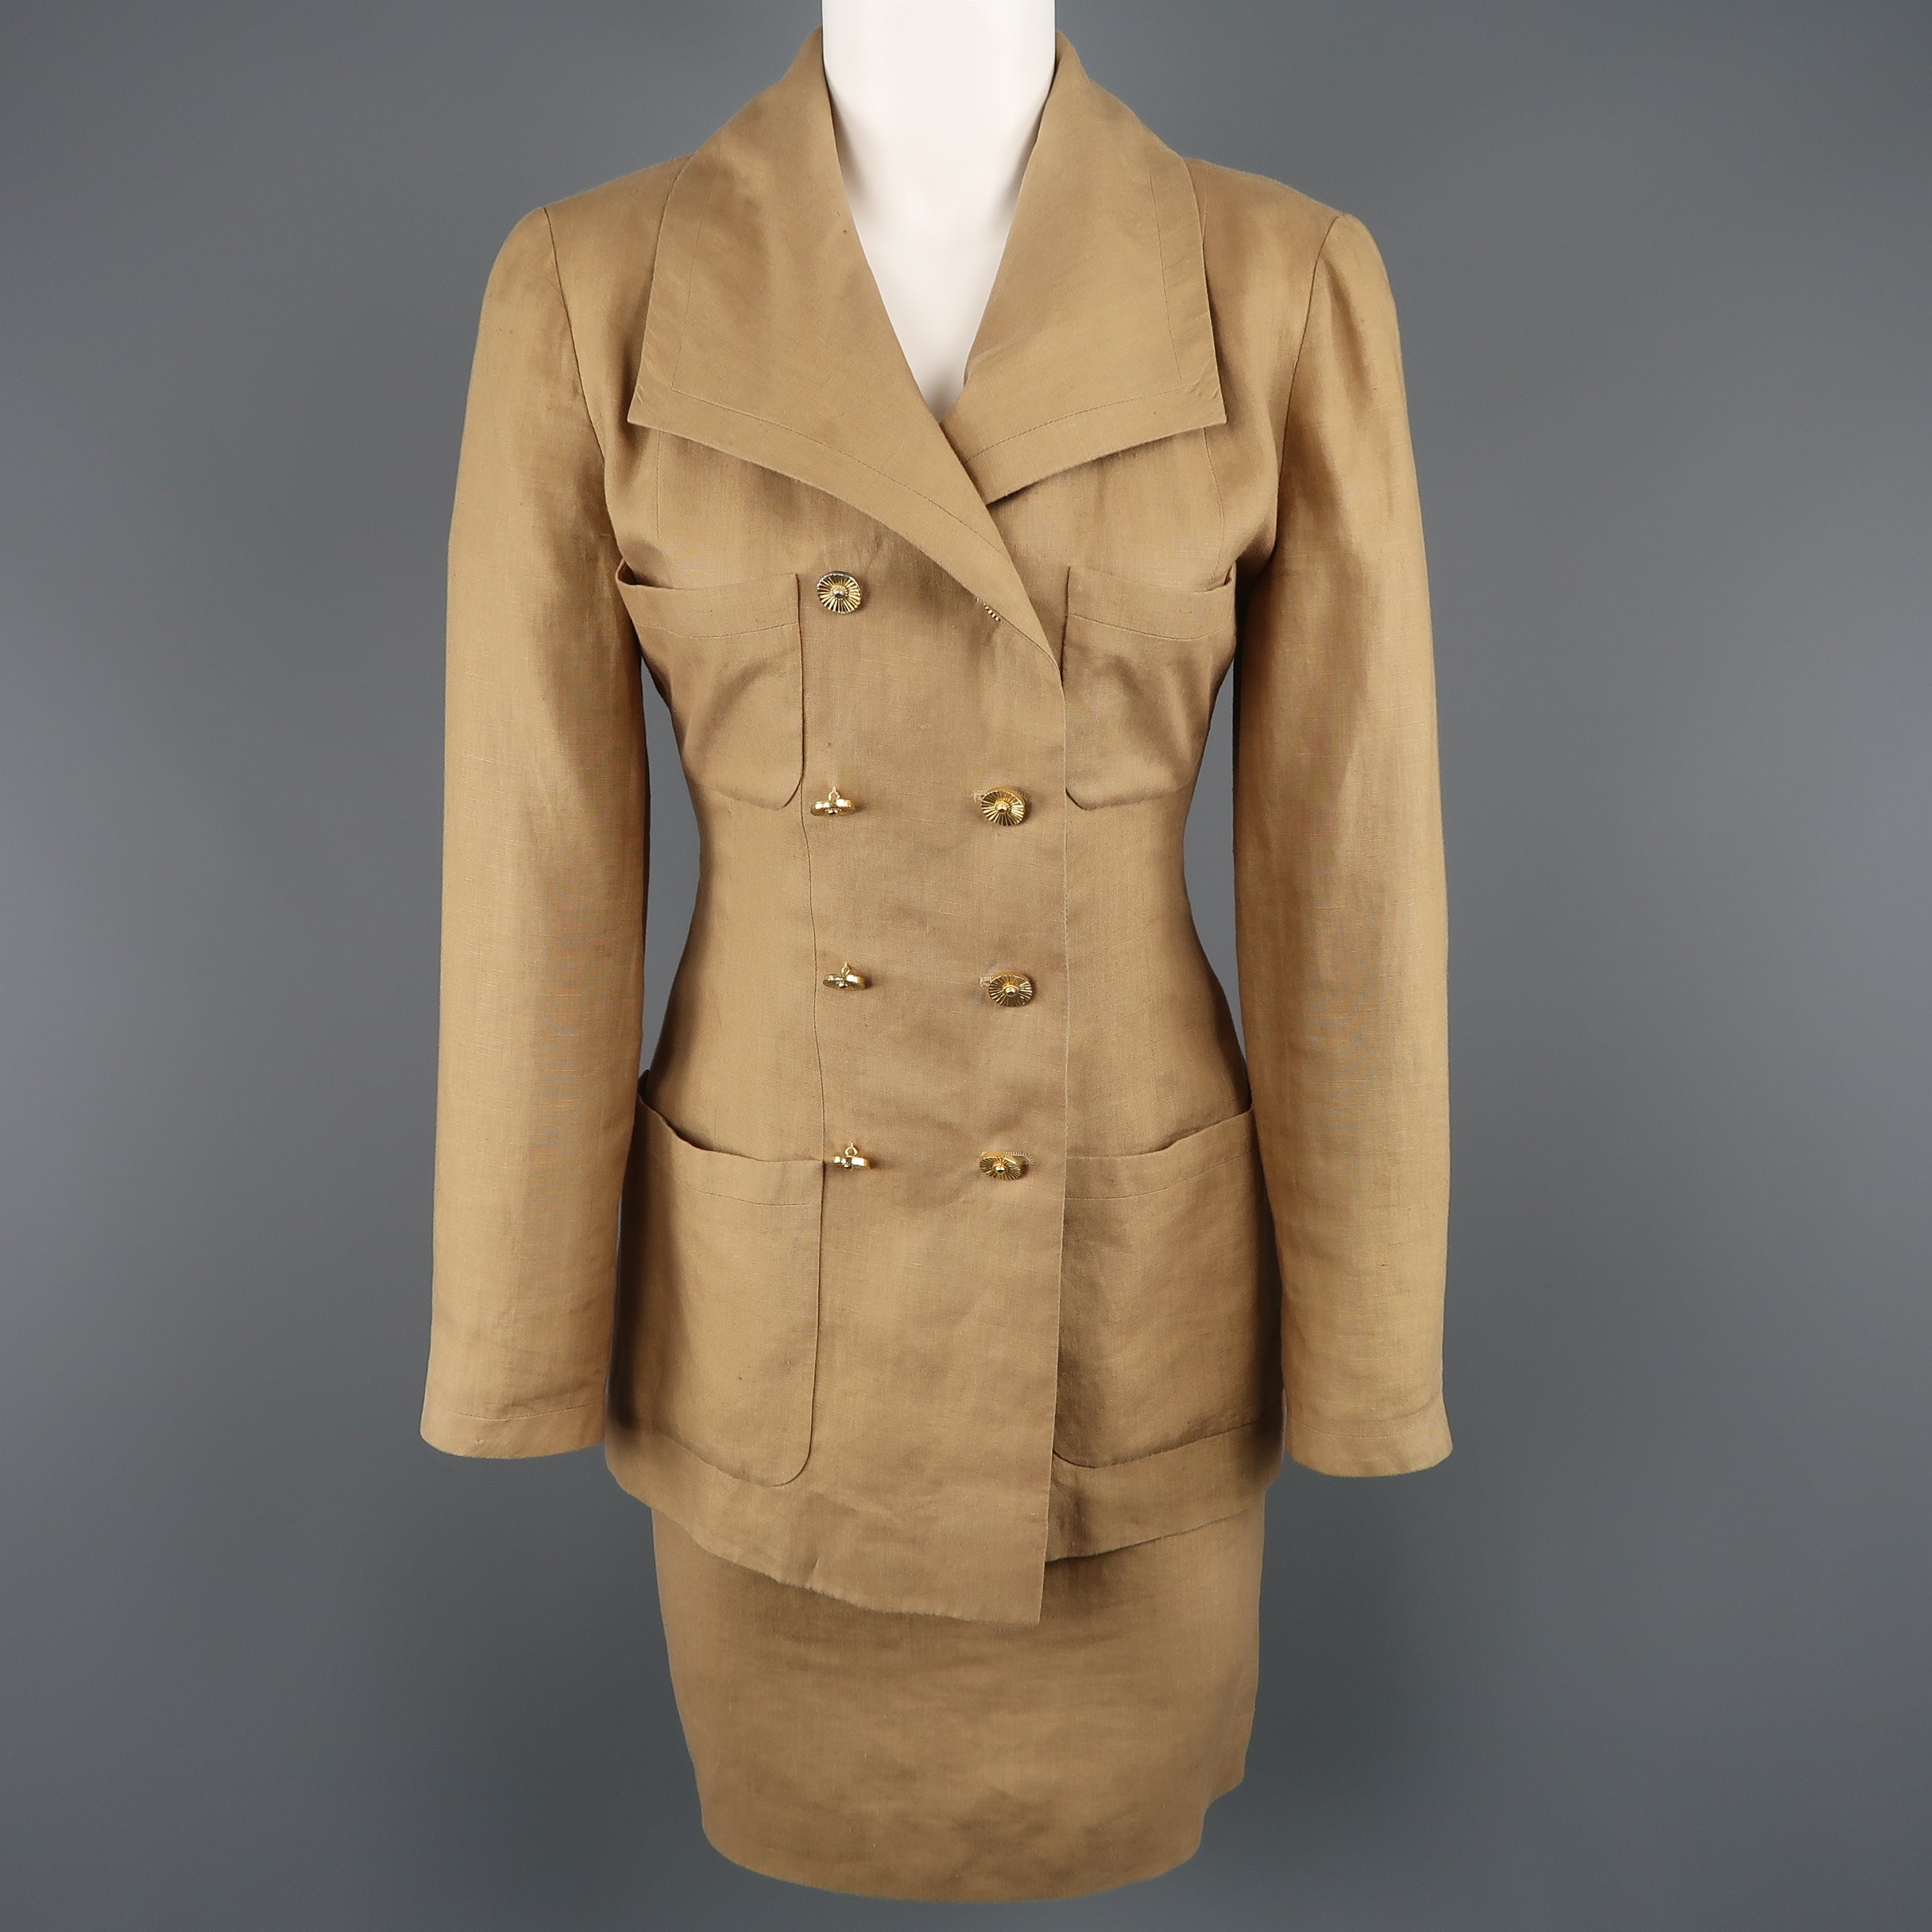 Sold at Auction: Vermilion Chanel Vintage Coat